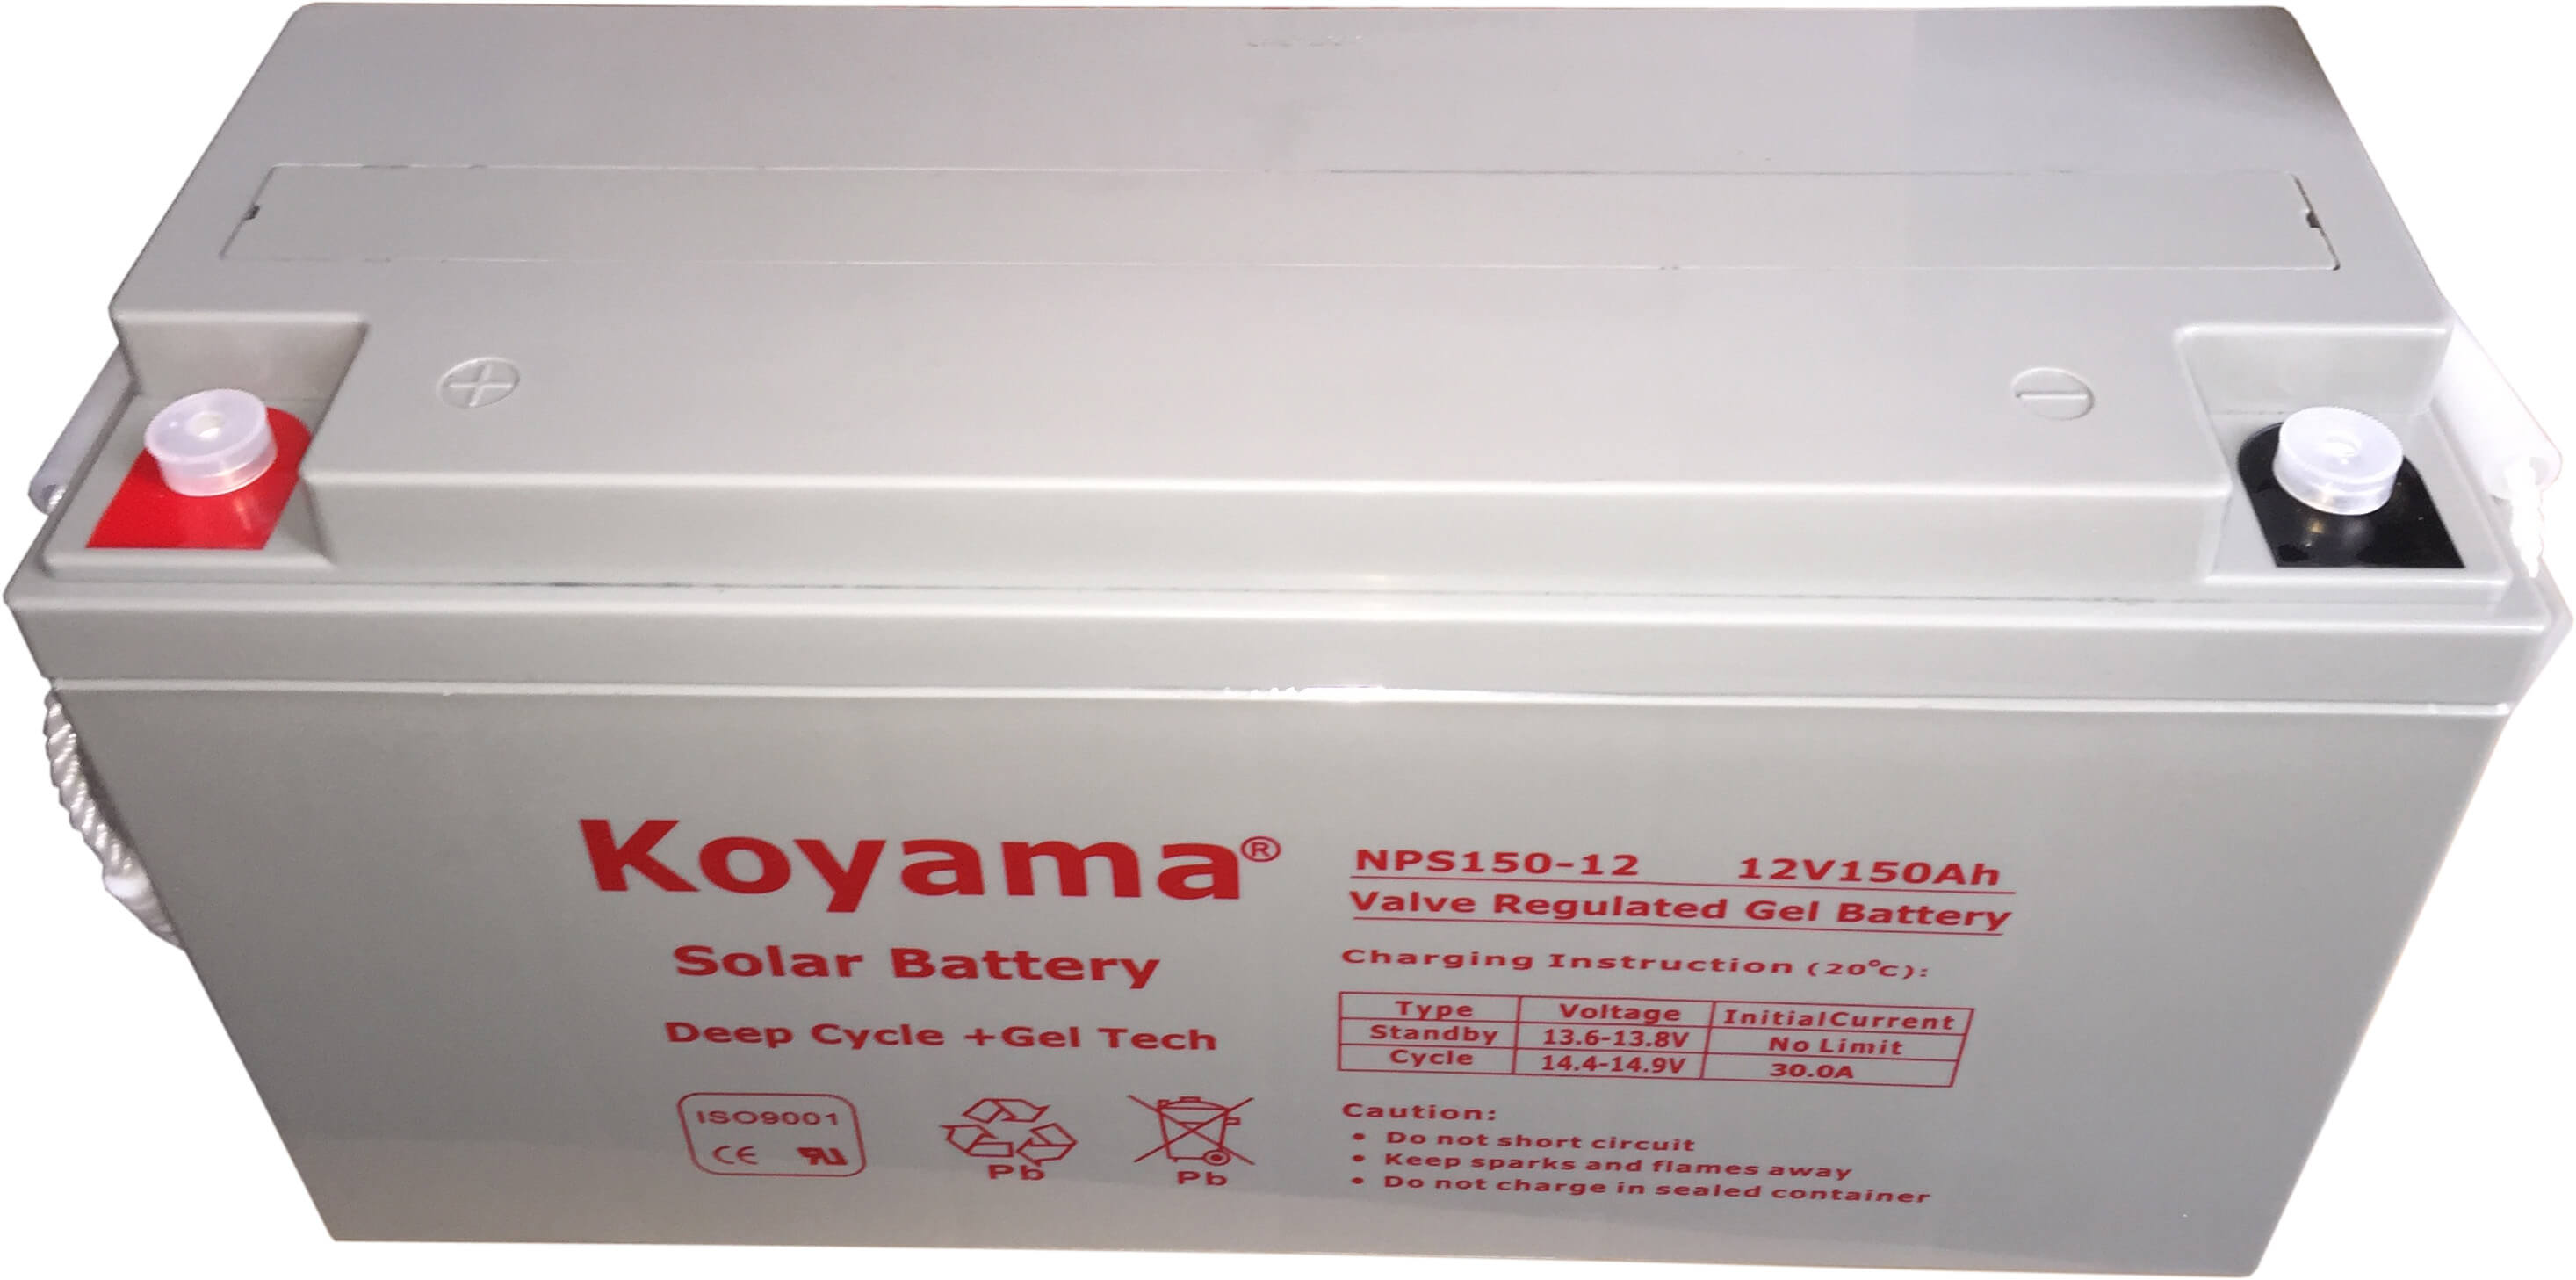 New 12V 150Ah Solar Gel Battery